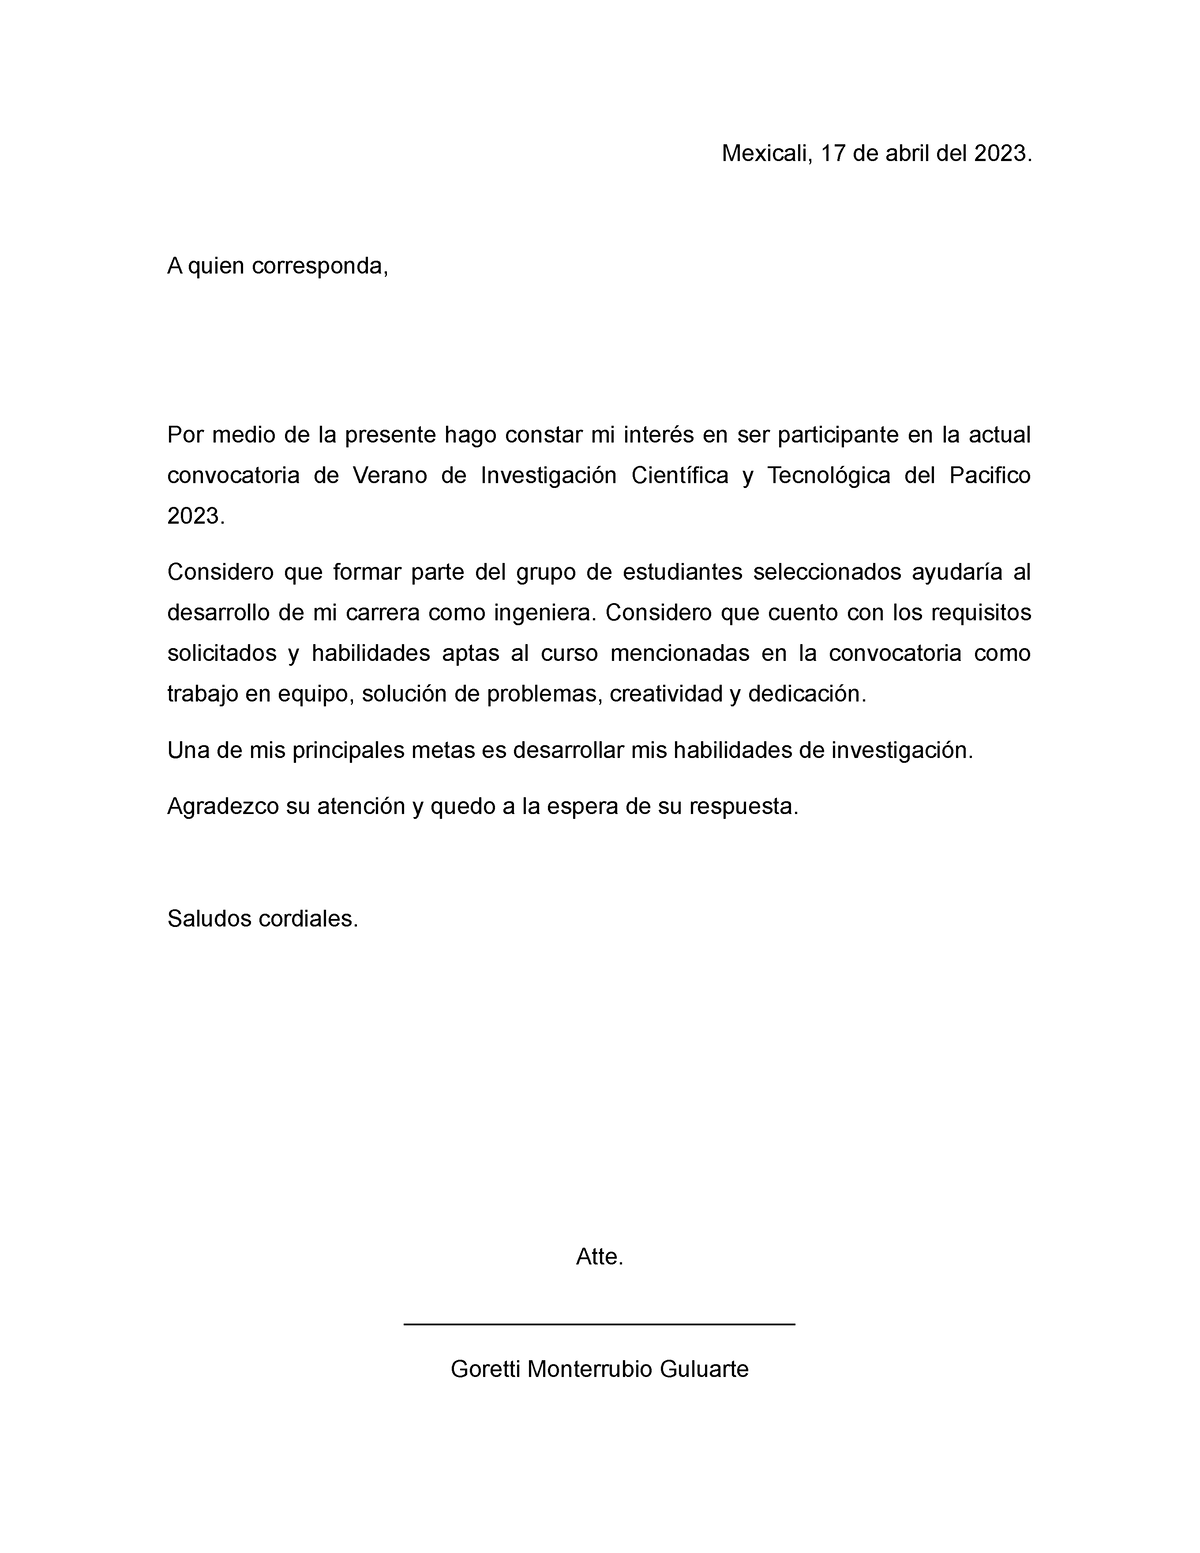 Carta comunicacion - Mexicali, 17 de abril del 2023. A quien ...